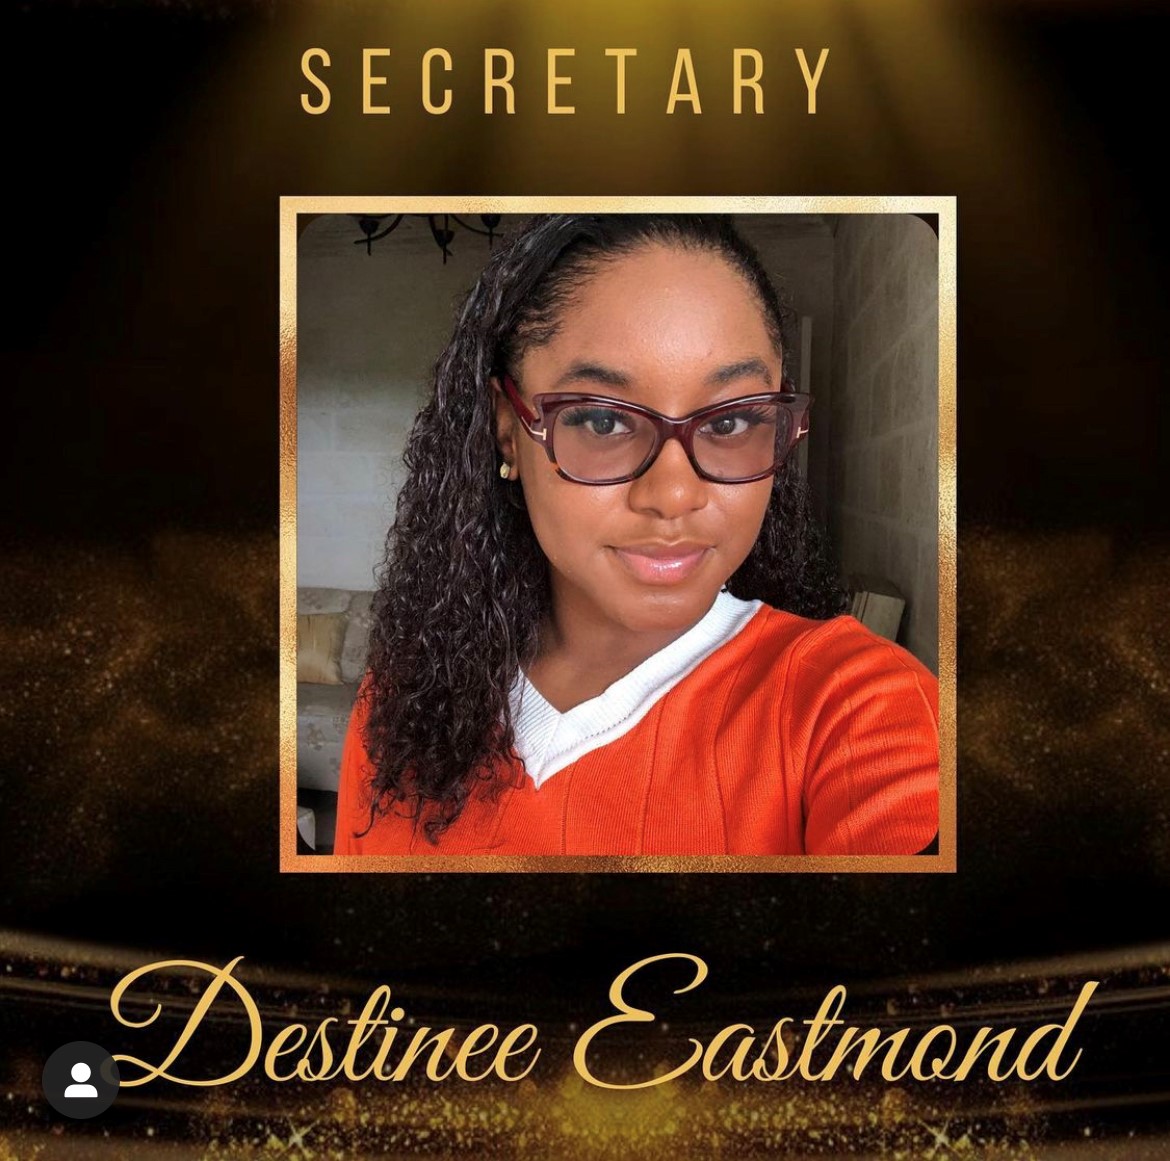 Secretary - Destinee Eastmond